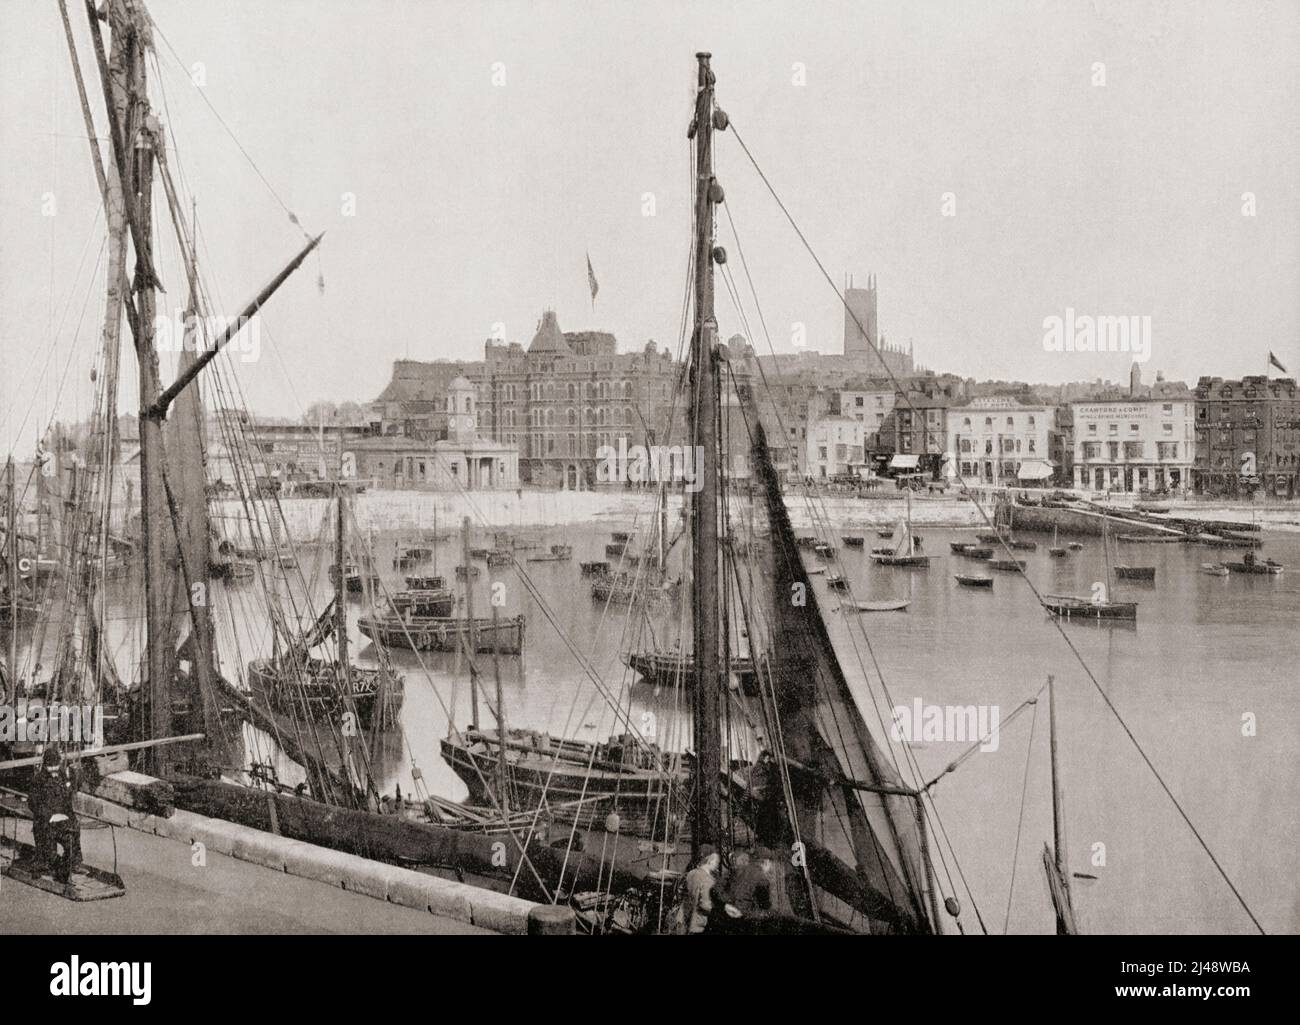 Il porto e il molo, Margate, Kent, Inghilterra, visto qui nel 19th secolo. Da tutta la costa, un Album di immagini da fotografie dei principali luoghi di interesse del mare in Gran Bretagna e Irlanda pubblicato Londra, 1895, da George Newnes Limited. Foto Stock